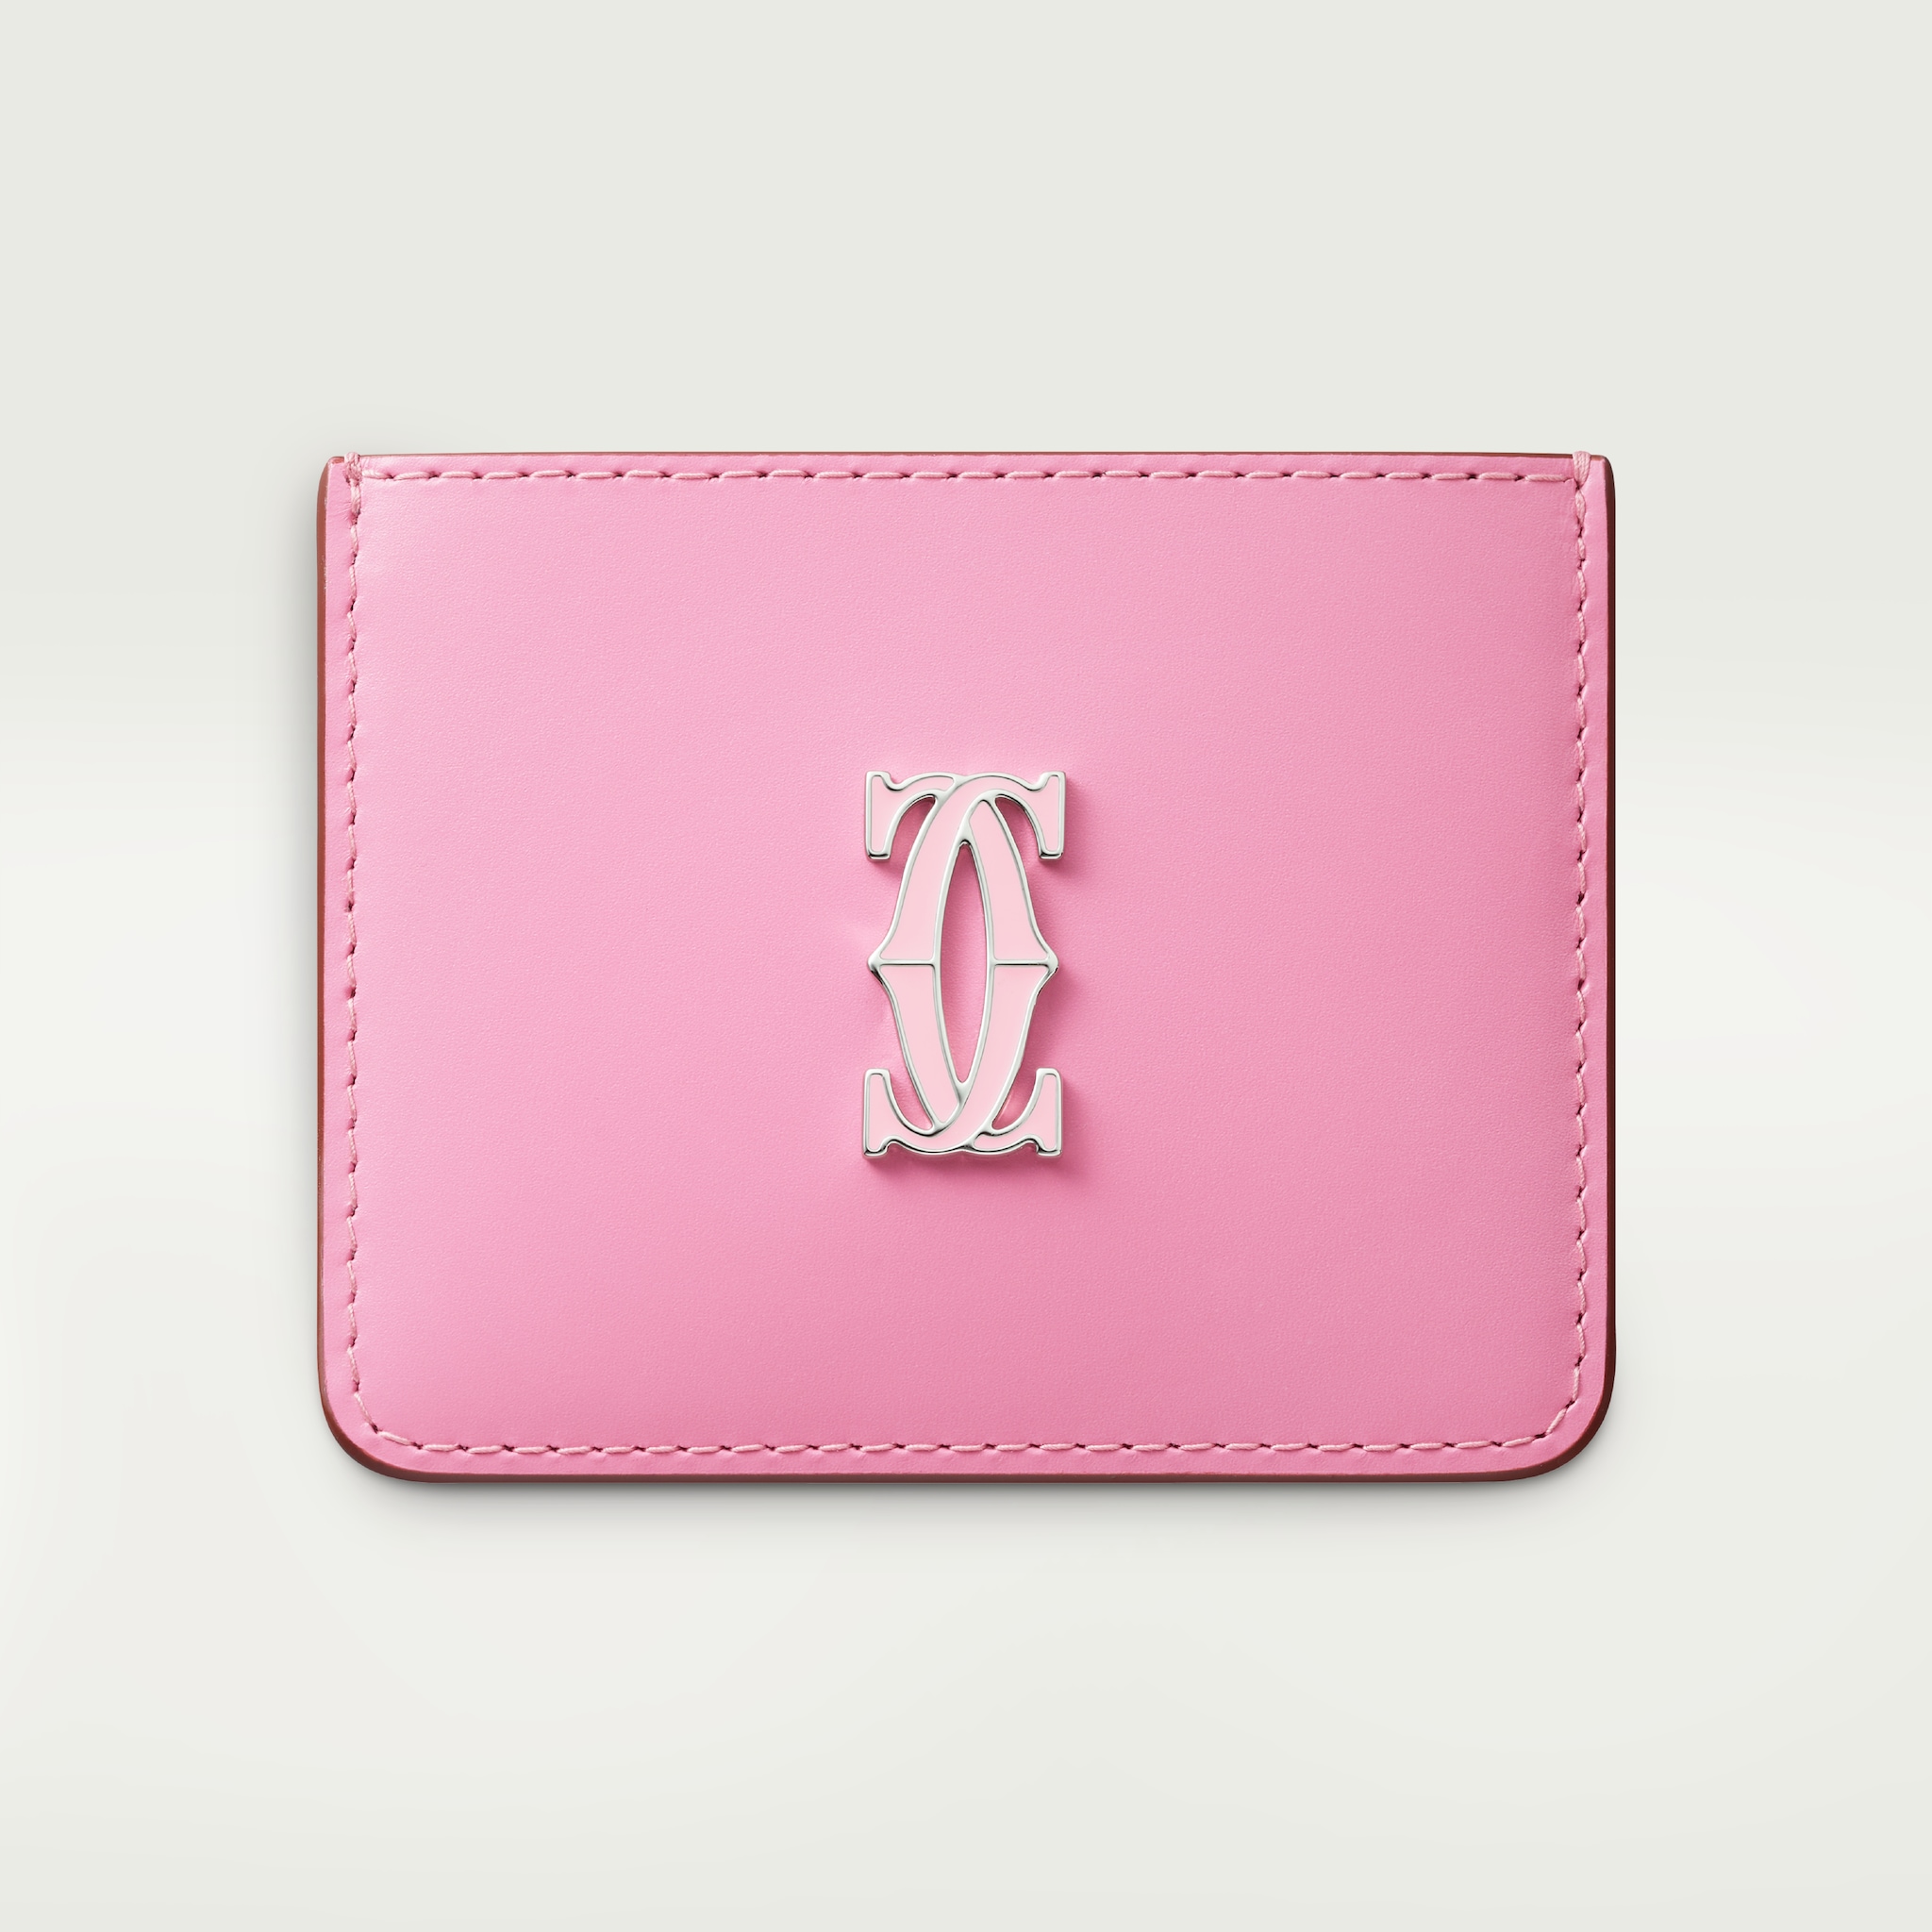 Porte-cartes simple, C de CartierCuir de veau bicolore rose/rose pâle, finition palladiée et émail rose pâle